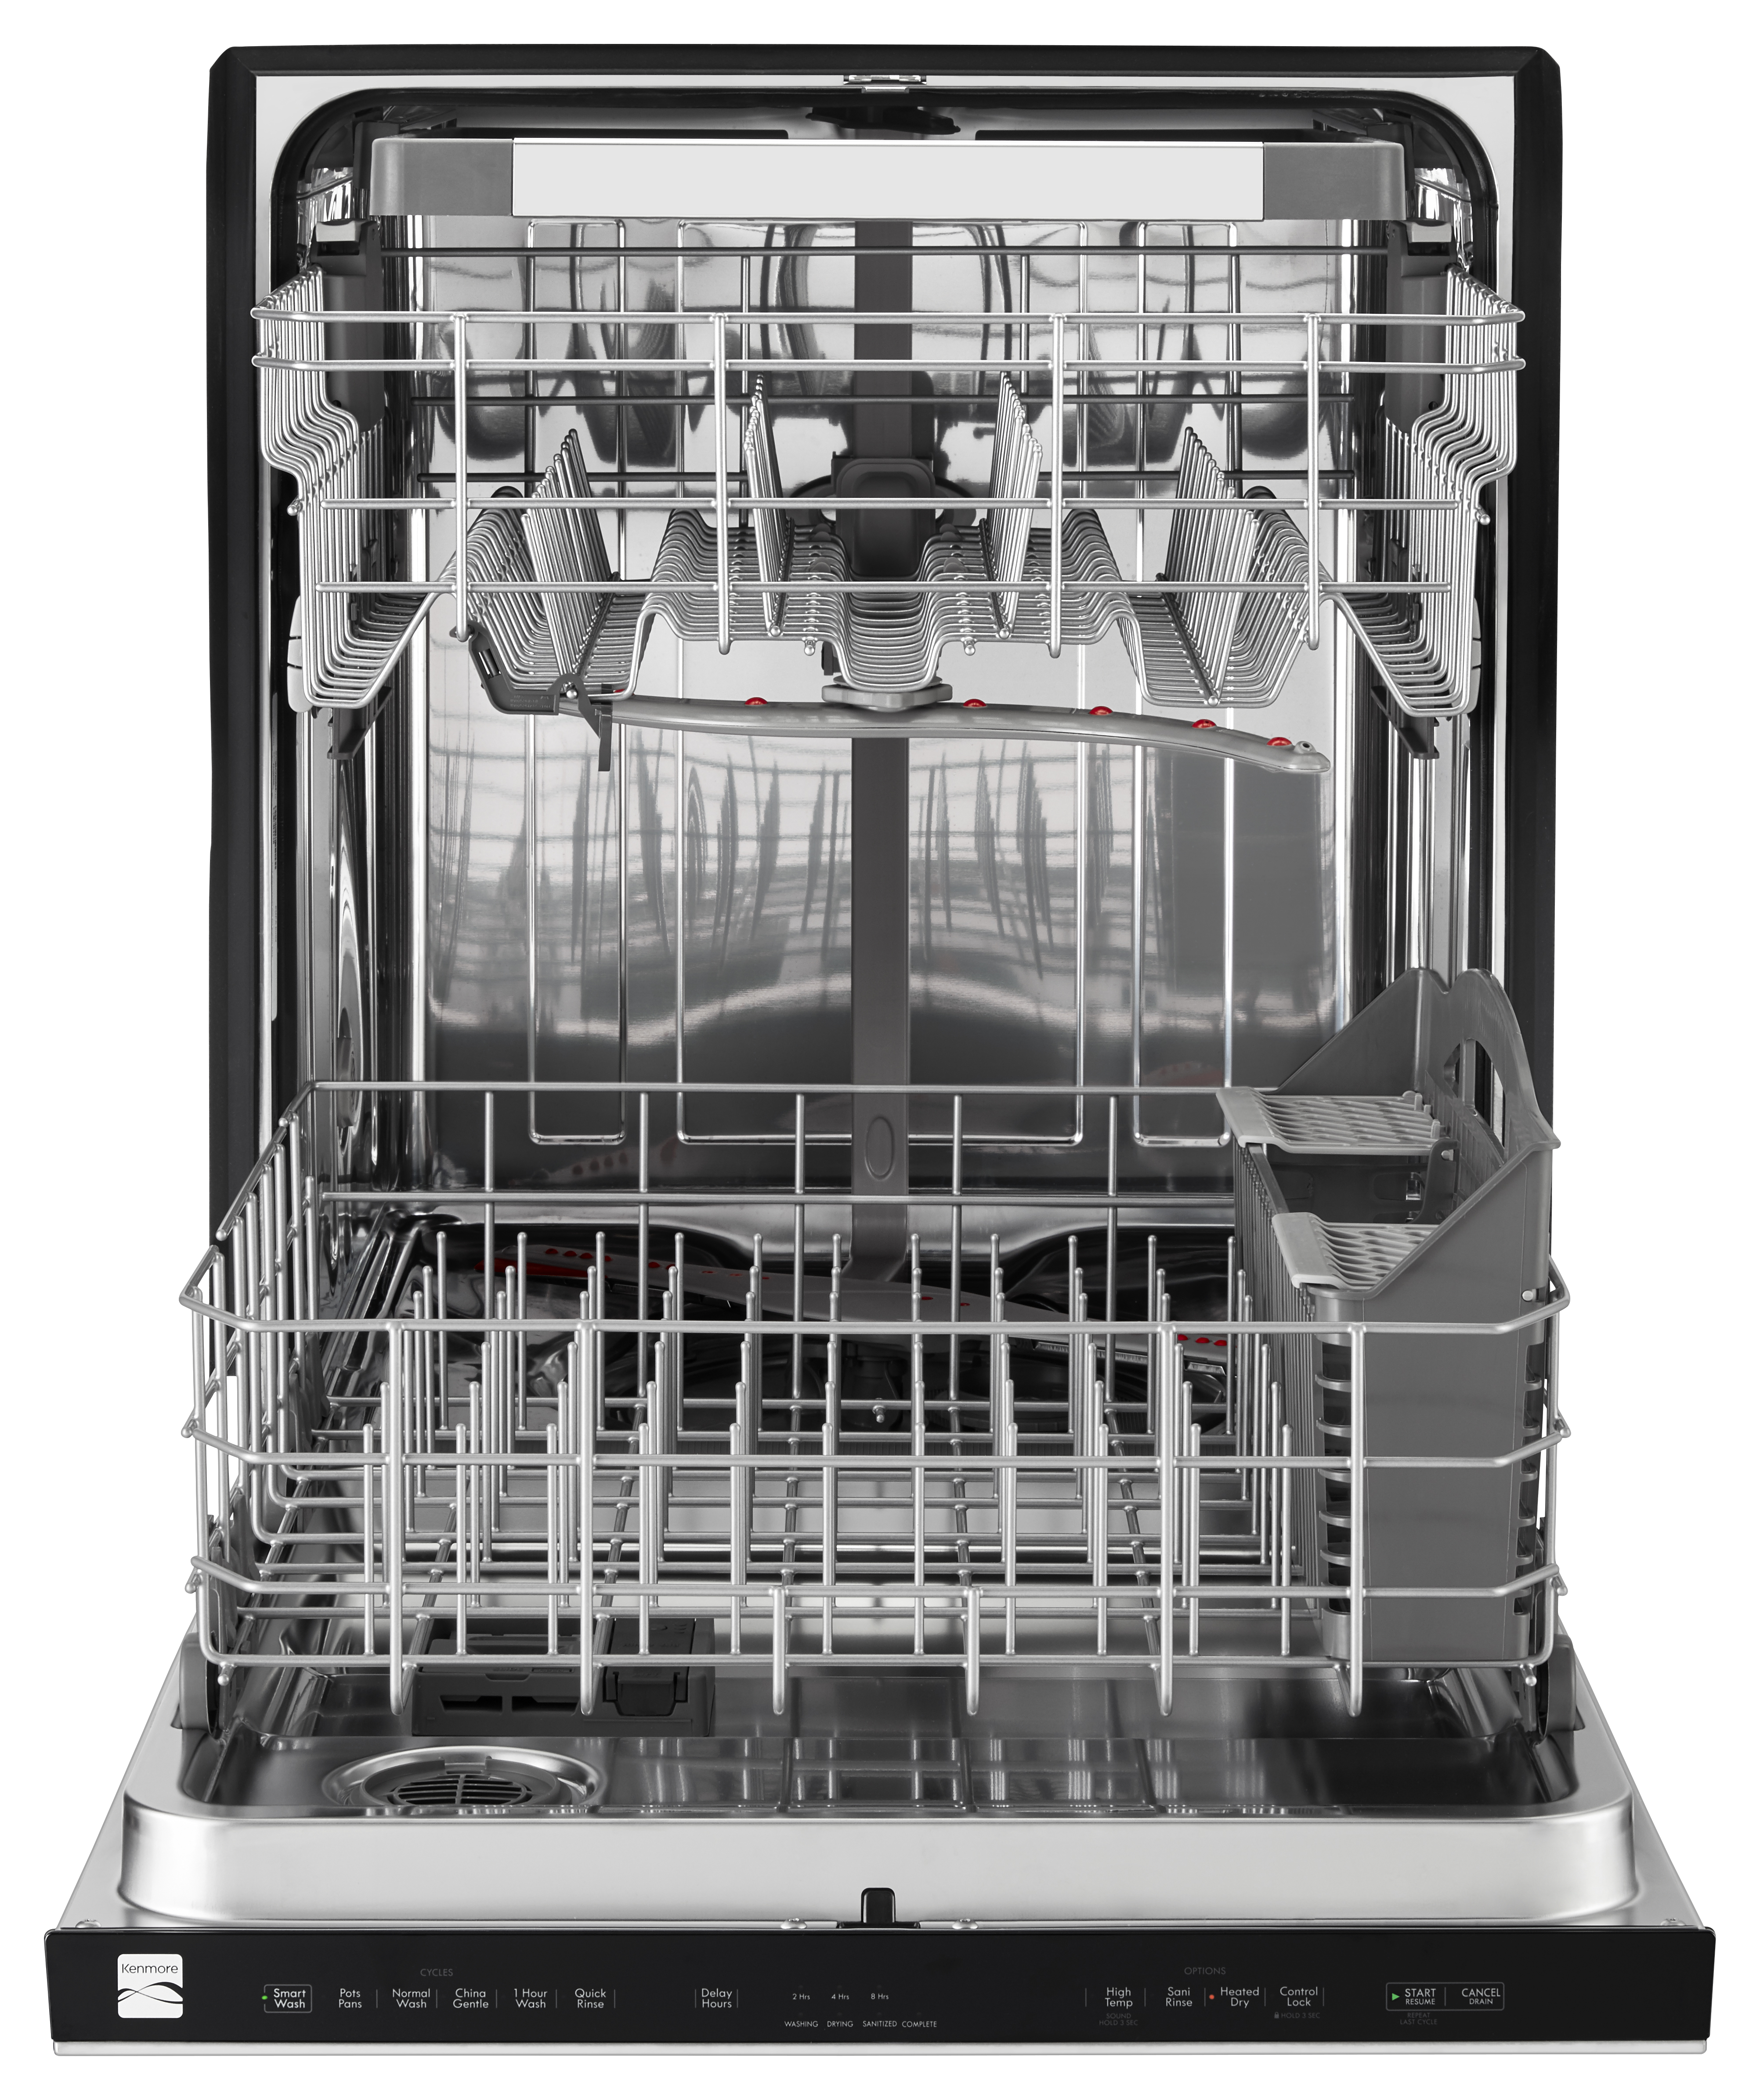 kenmore 14543 dishwasher reviews